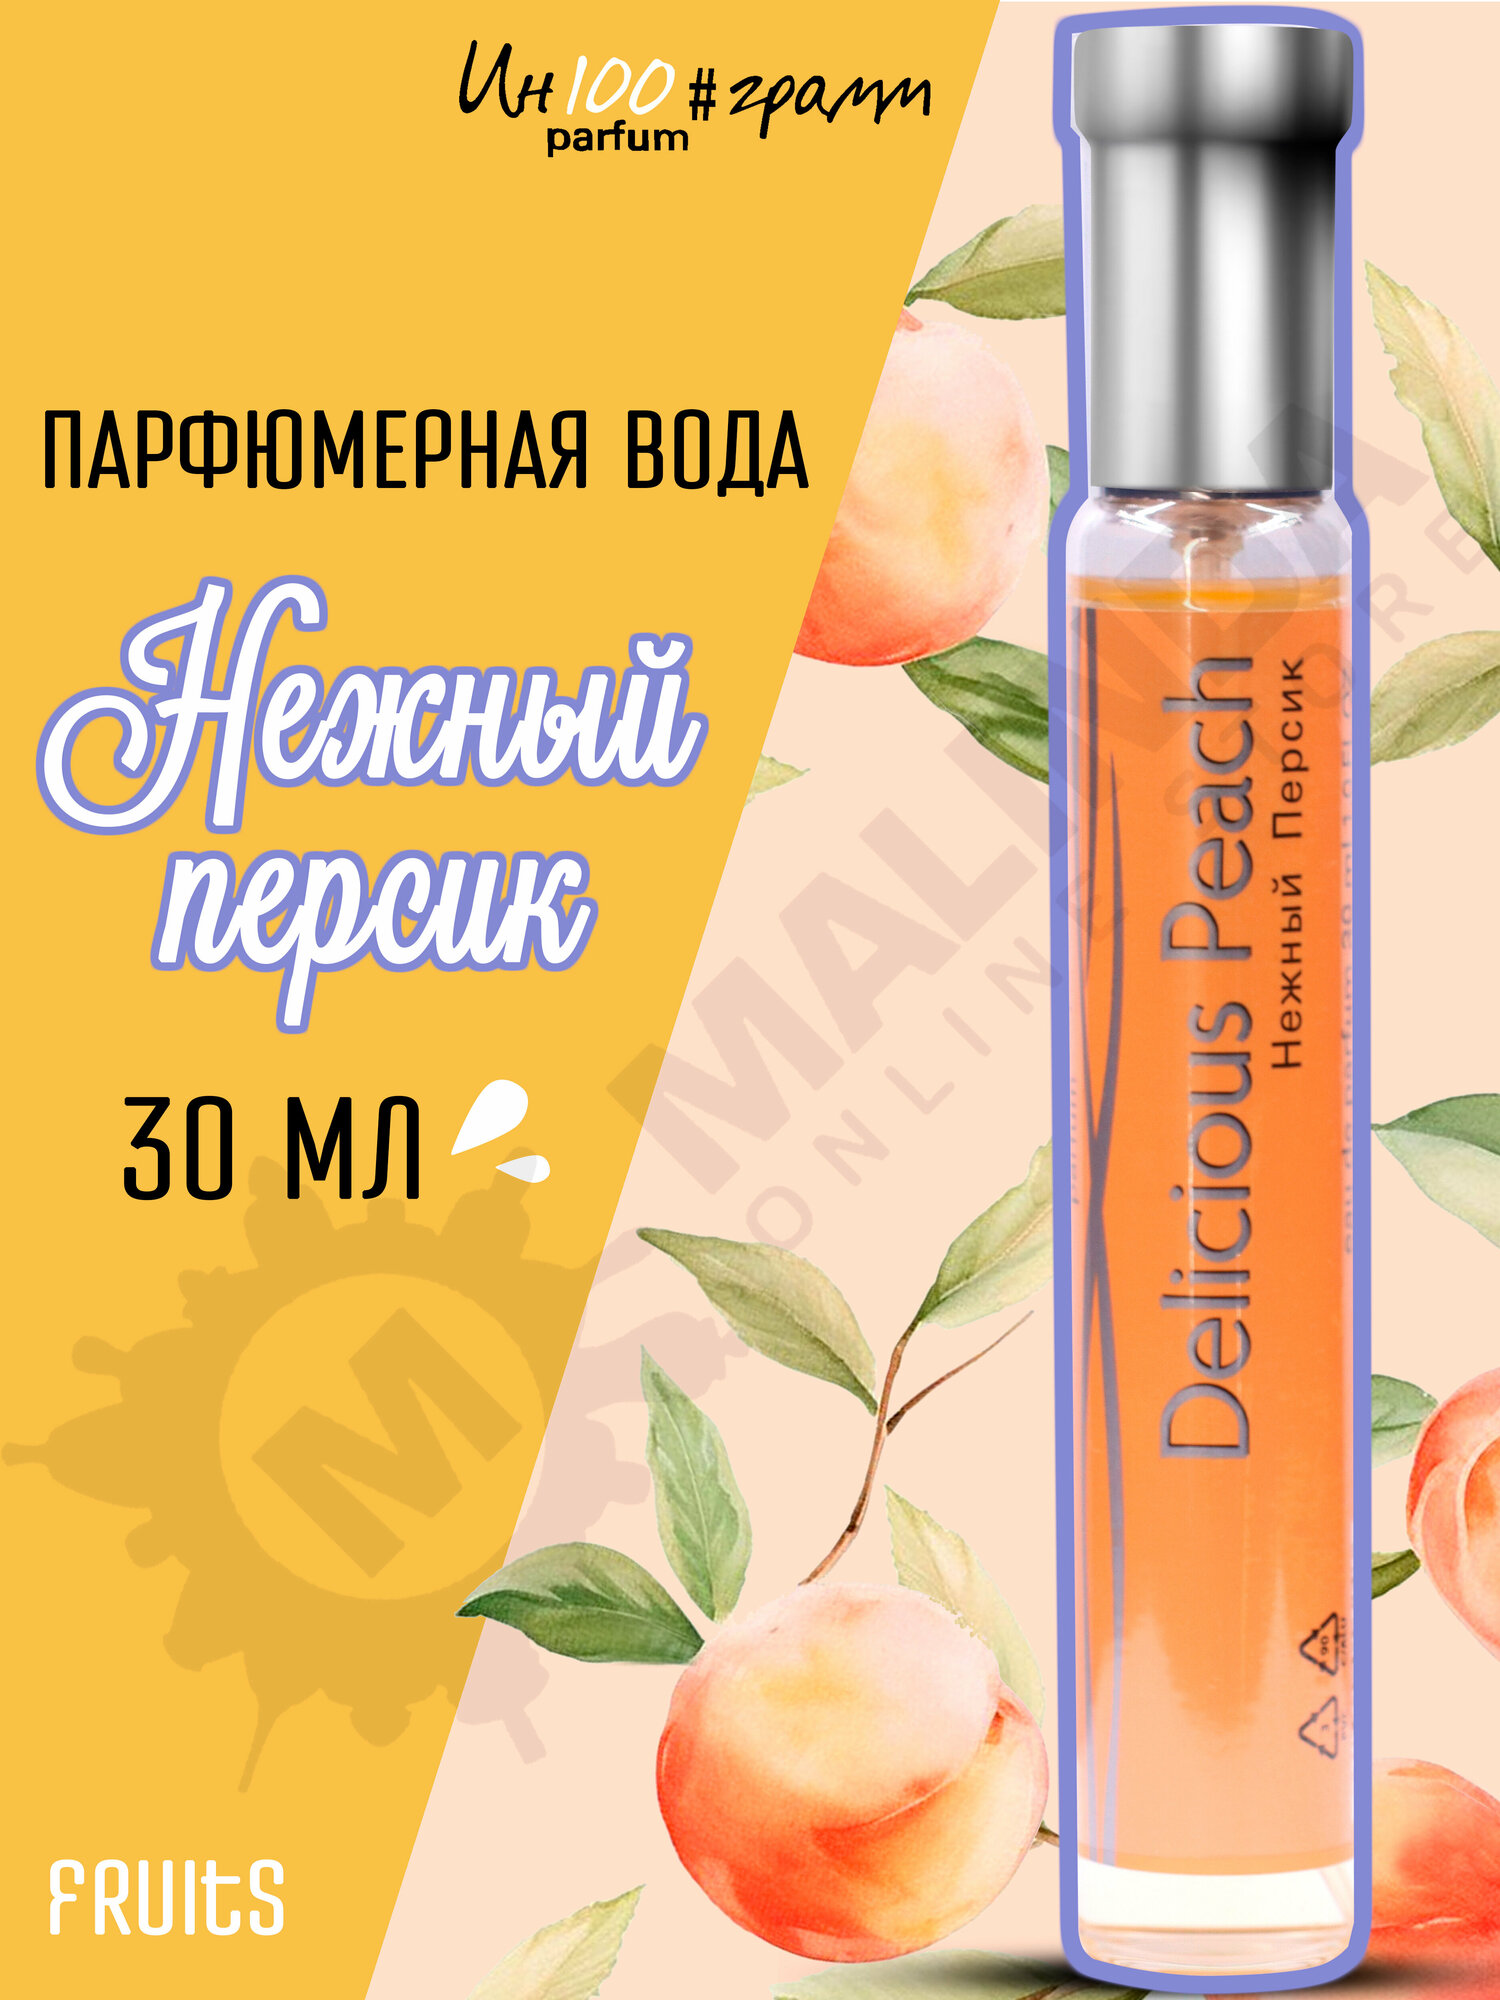 ИН100#грамм PARFUM Нежный персик Женская парфюмерная вода 30 мл